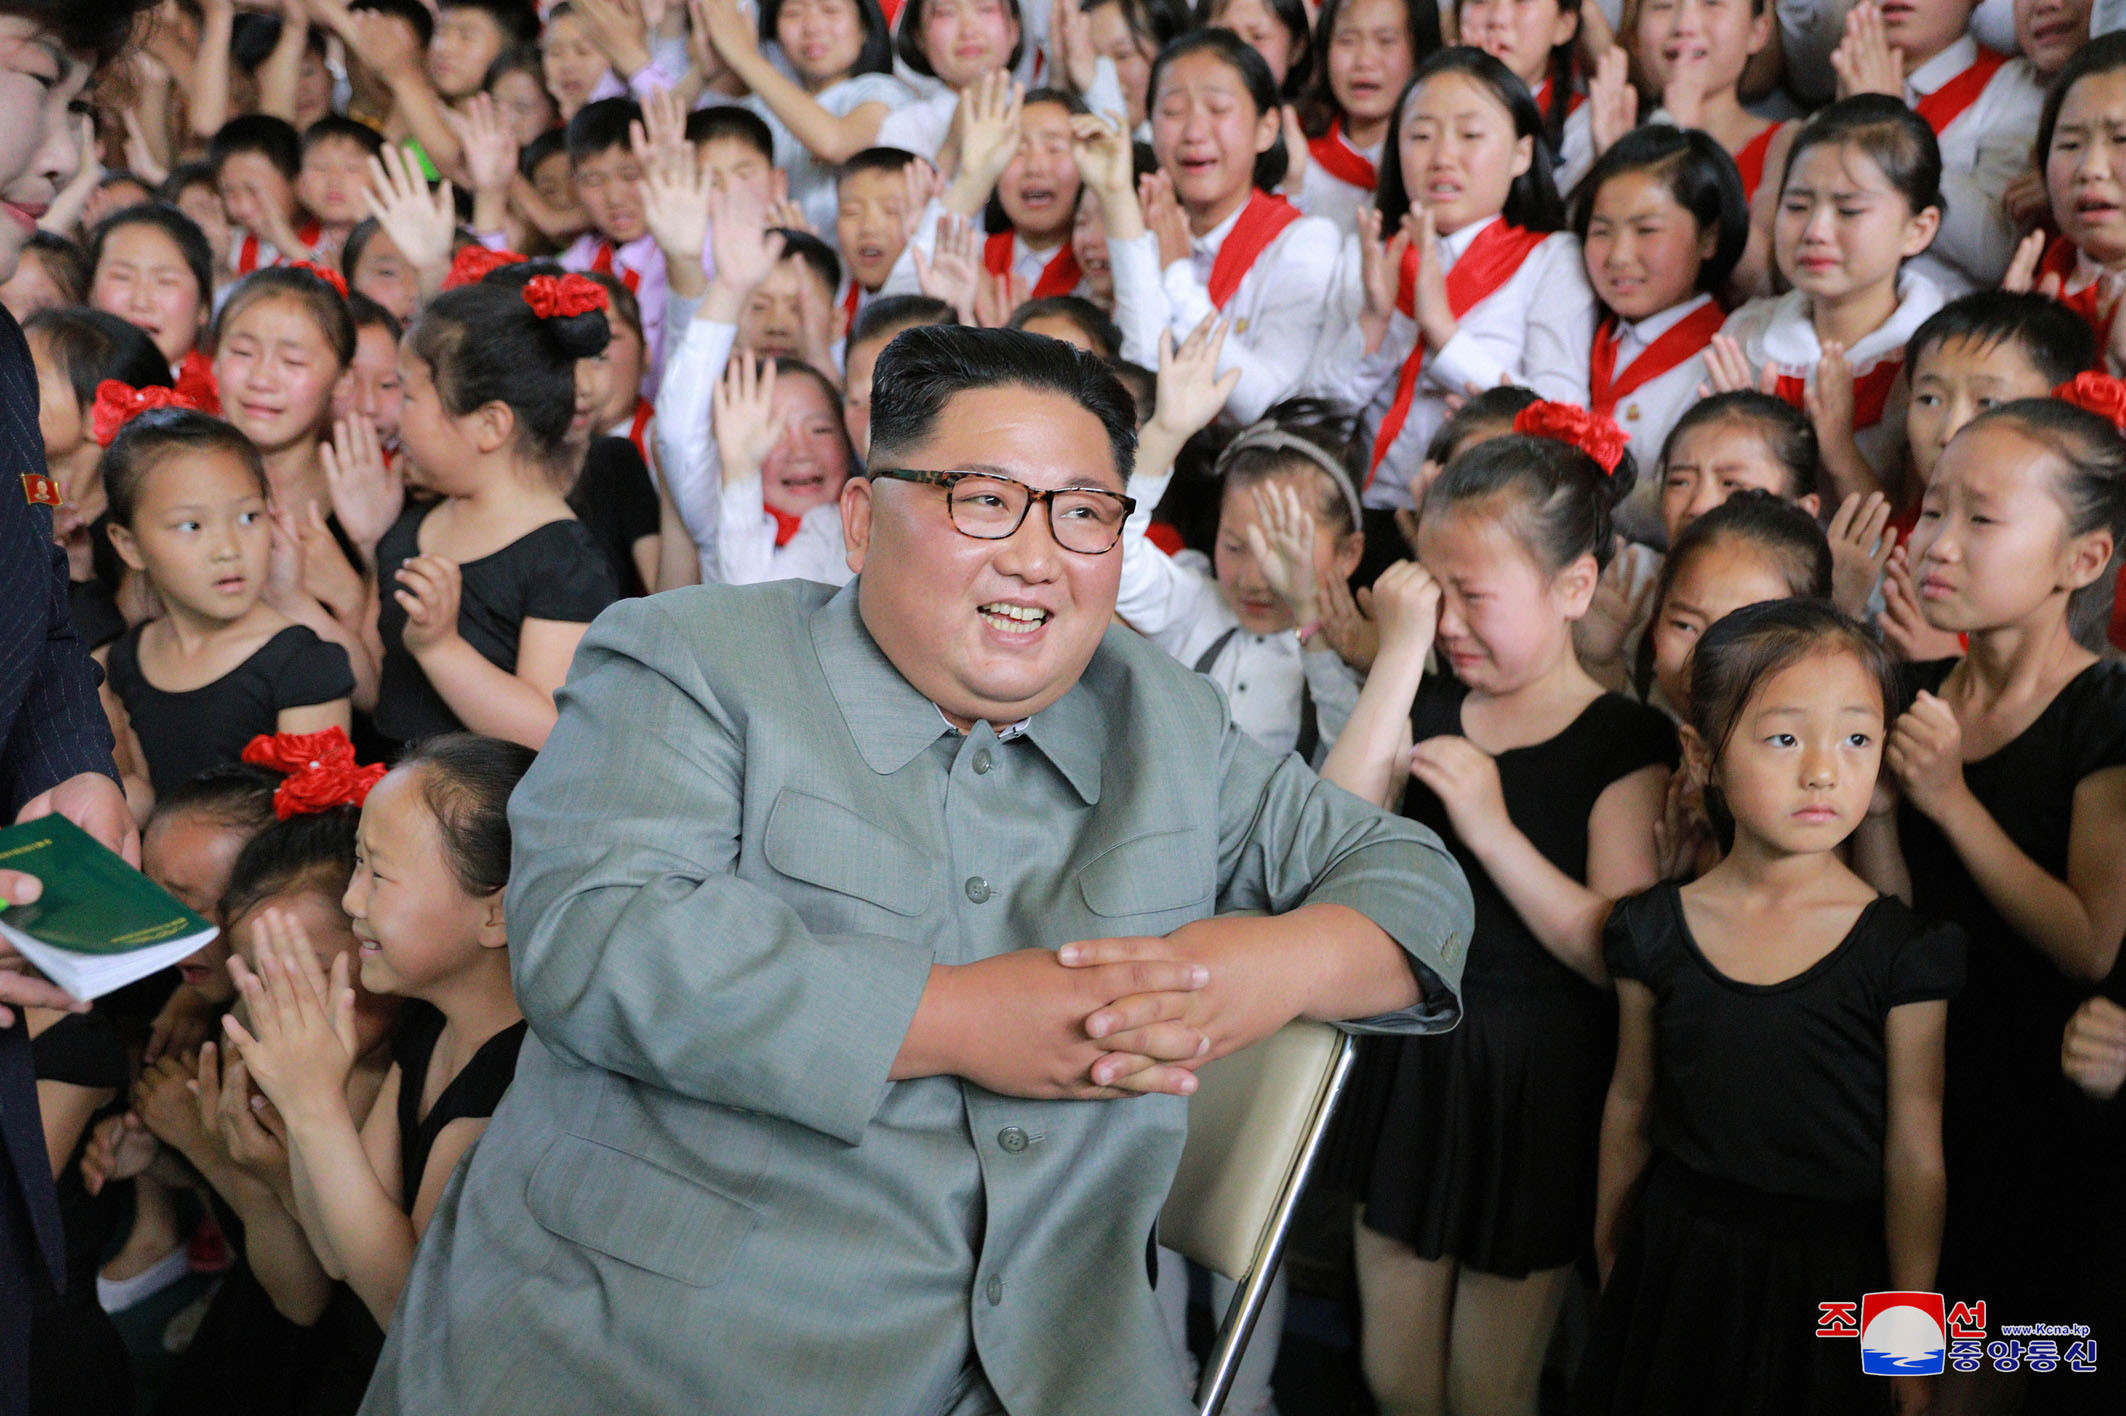 Kim Jong-un îmbrățișând copii, la o zi după ce ar fi executat mai mulți oficiali - Imaginea 2